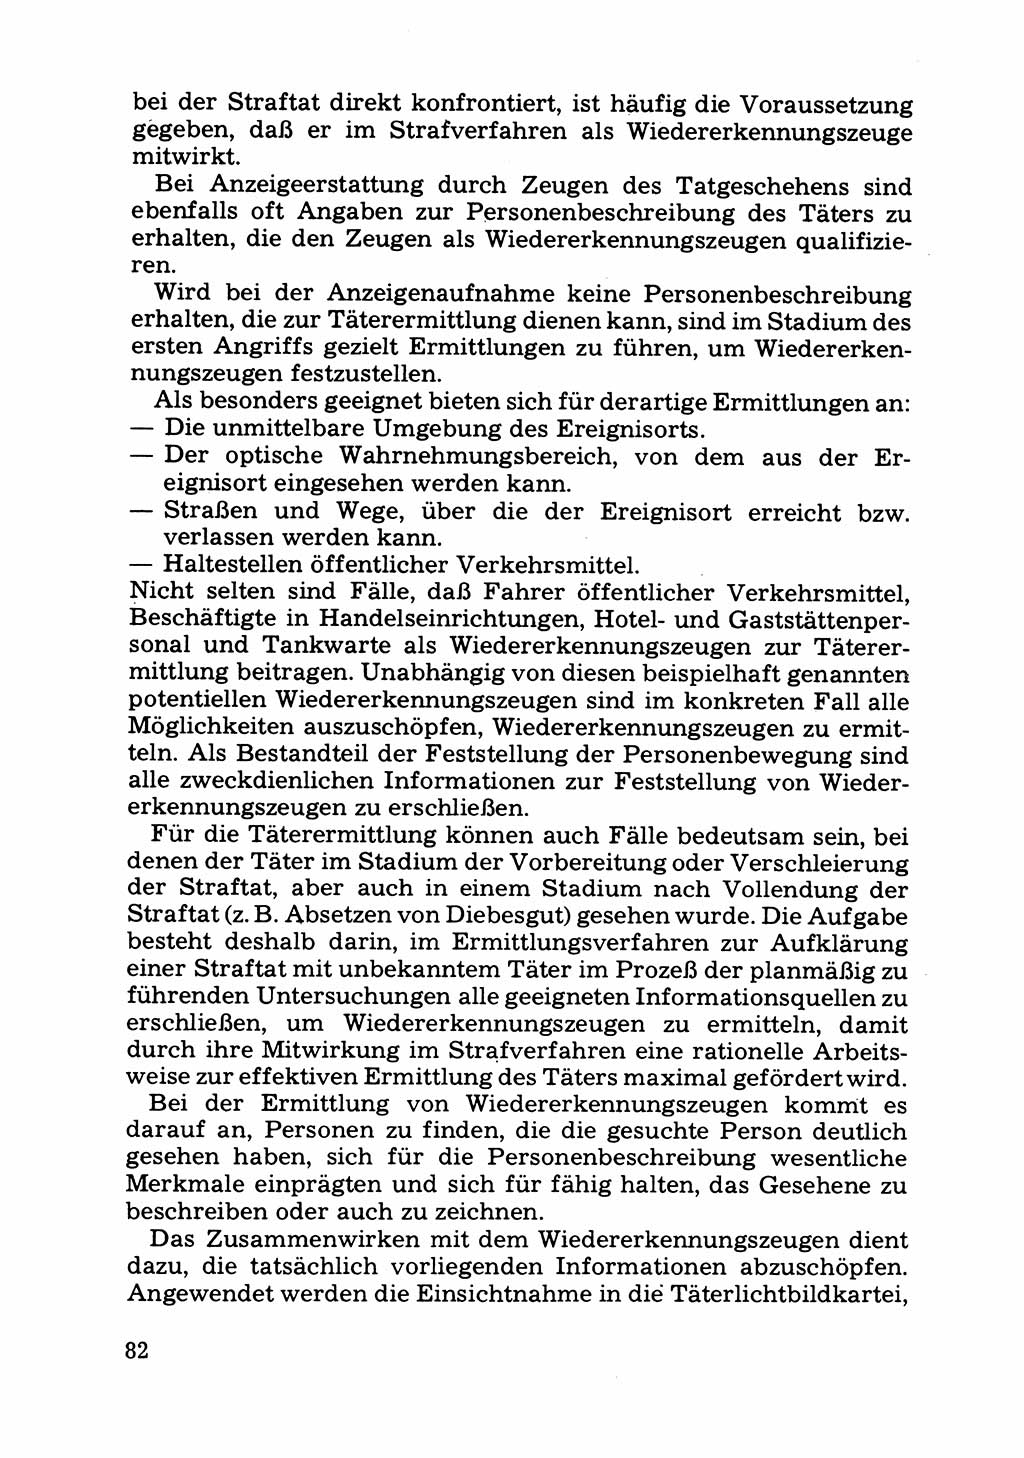 Das subjektive Porträt [Deutsche Demokratische Republik (DDR)] 1981, Seite 82 (Subj. Port. DDR 1981, S. 82)